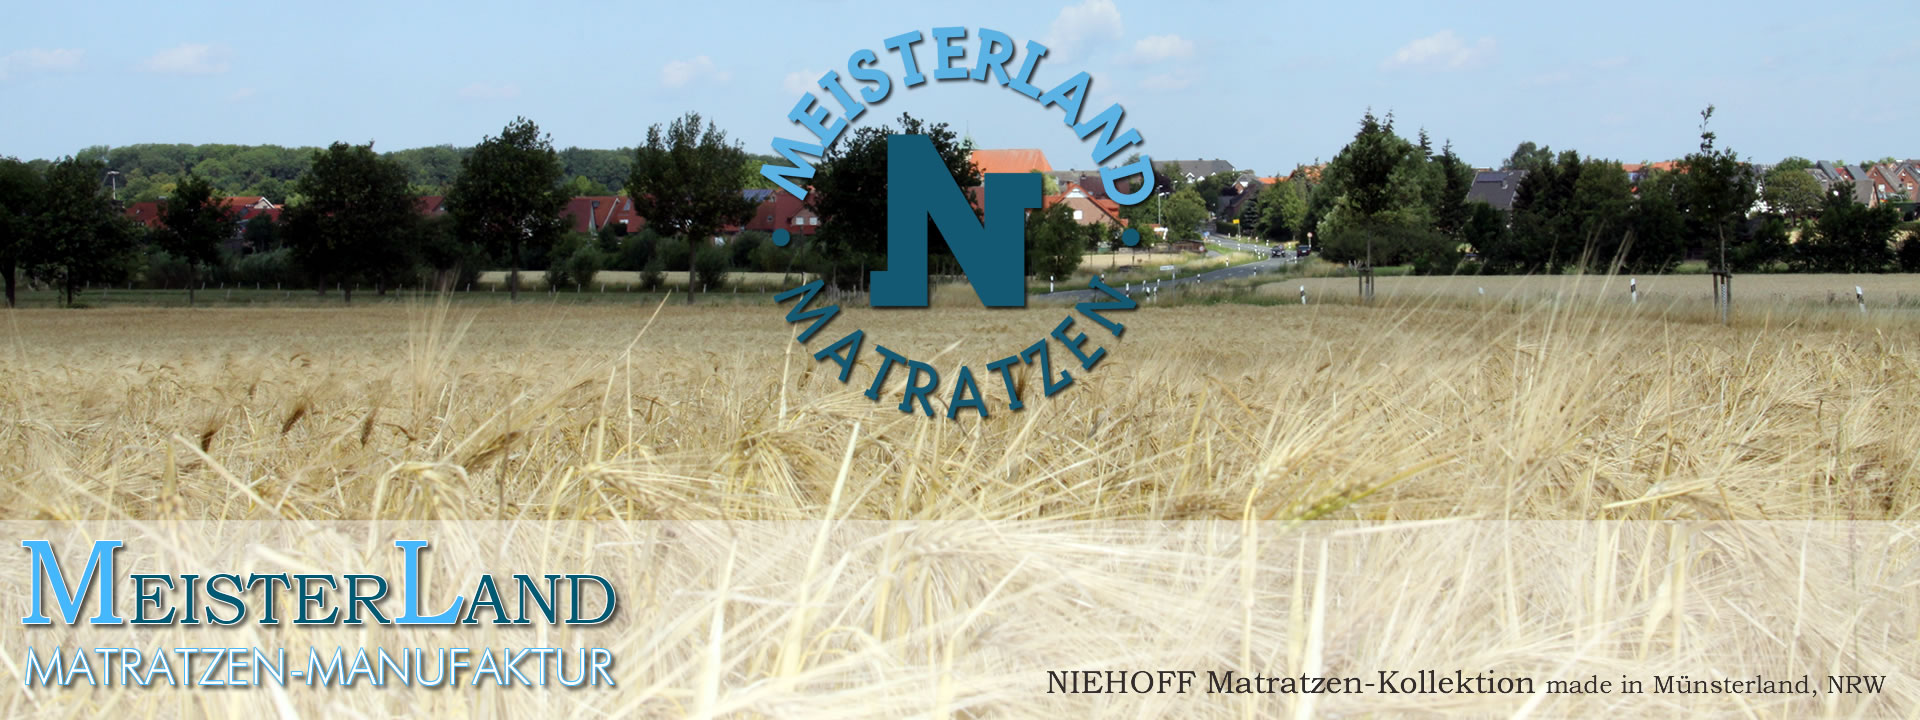 Matratzen Qualität aus Münsterland, NRW